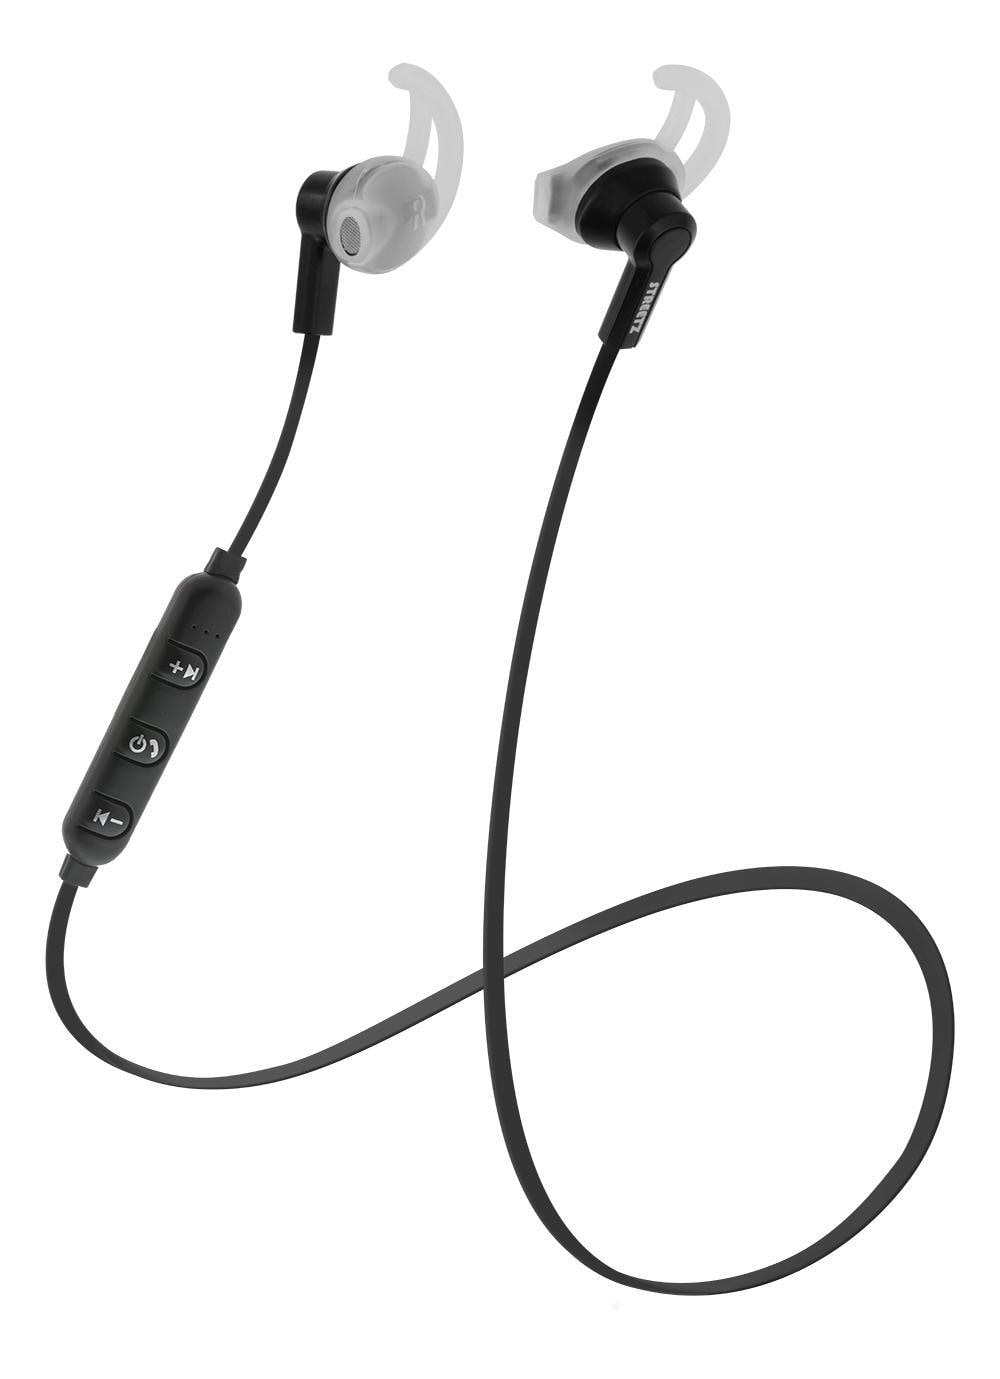 STREETZ Stay-in-ear BT hörlurar med mikrofon och media/svarsknappar, s -  Elgiganten